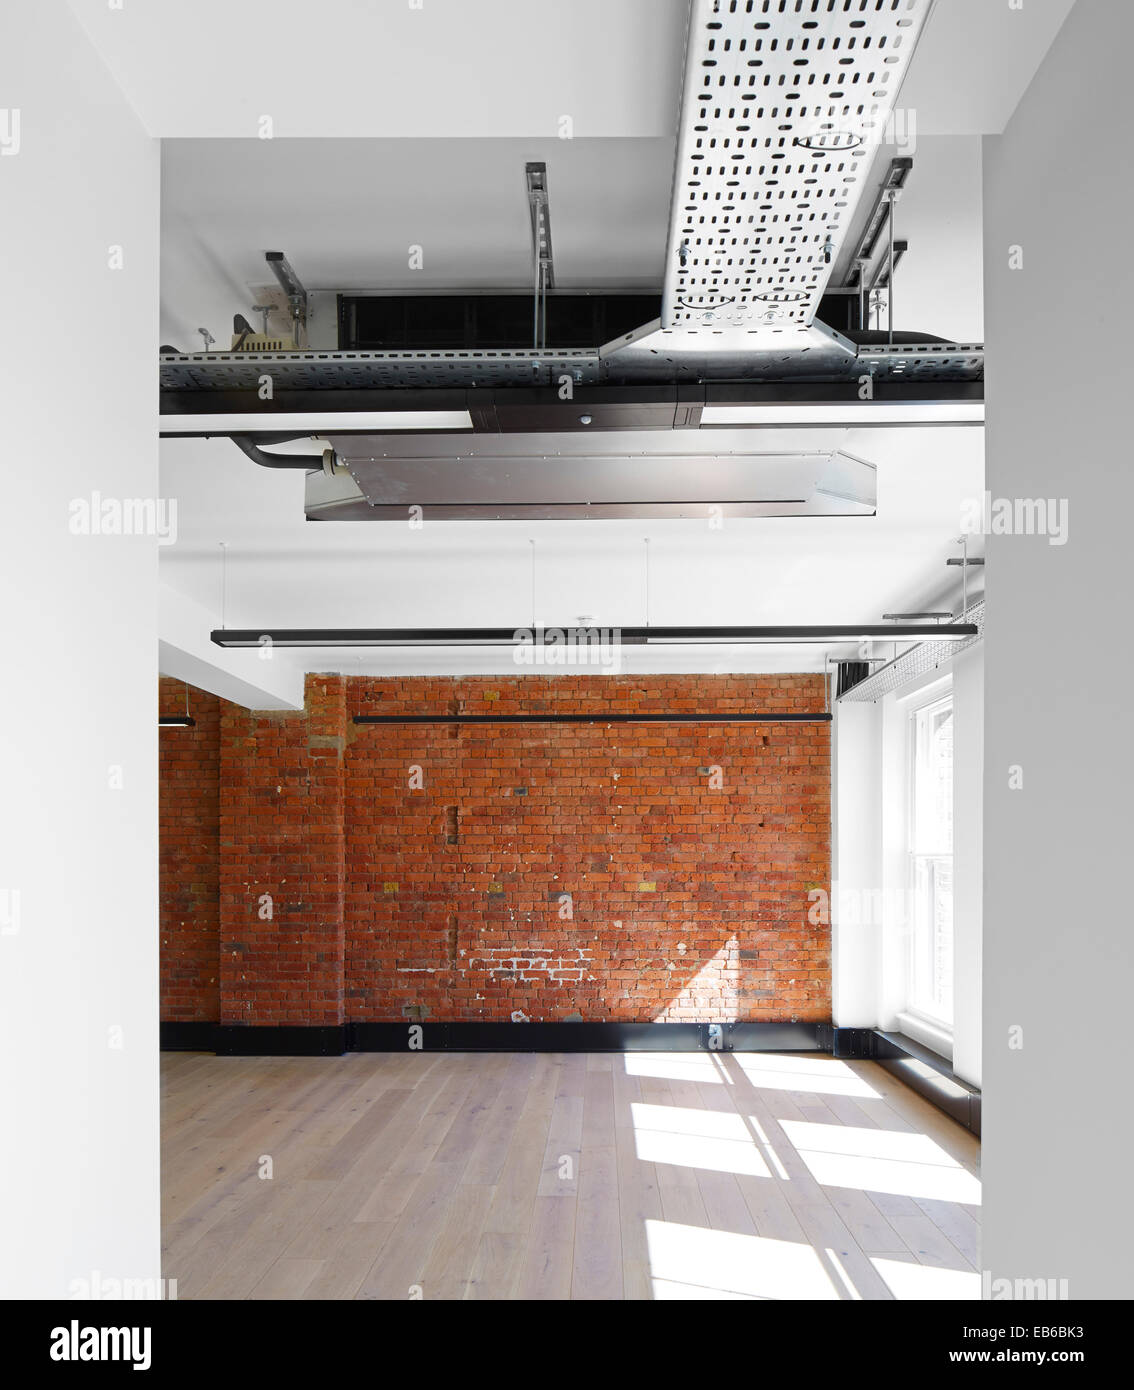 151-153 Lector Court, Londra, Regno Unito. Architetto: Ben Adams architetti, 2014. Dettaglio del piano aperto in ufficio. Foto Stock